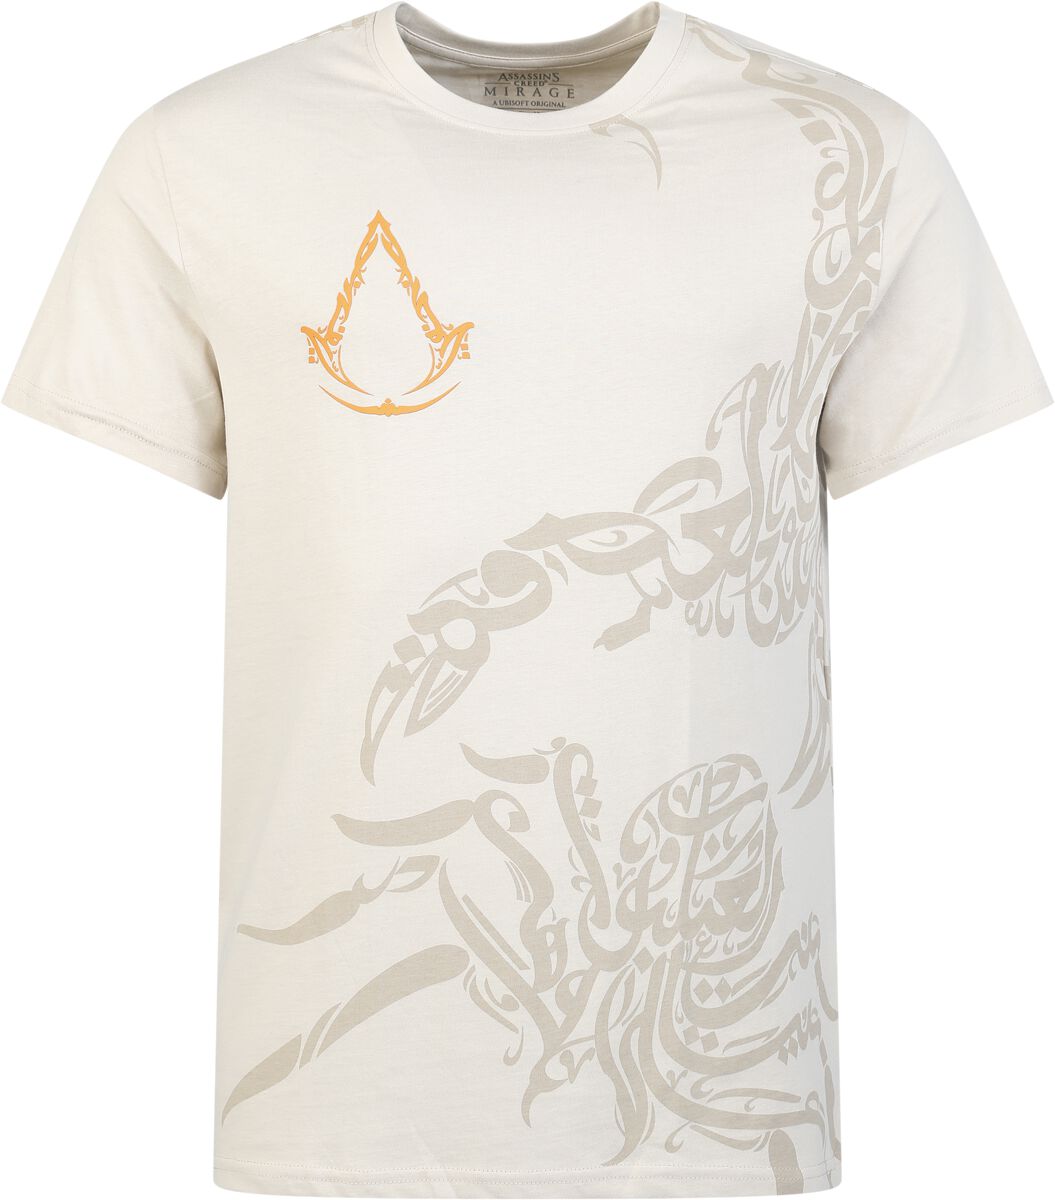 Assassin`s Creed - Gaming T-Shirt - Mirage - Animals - S bis XXL - für Männer - Größe M - beige